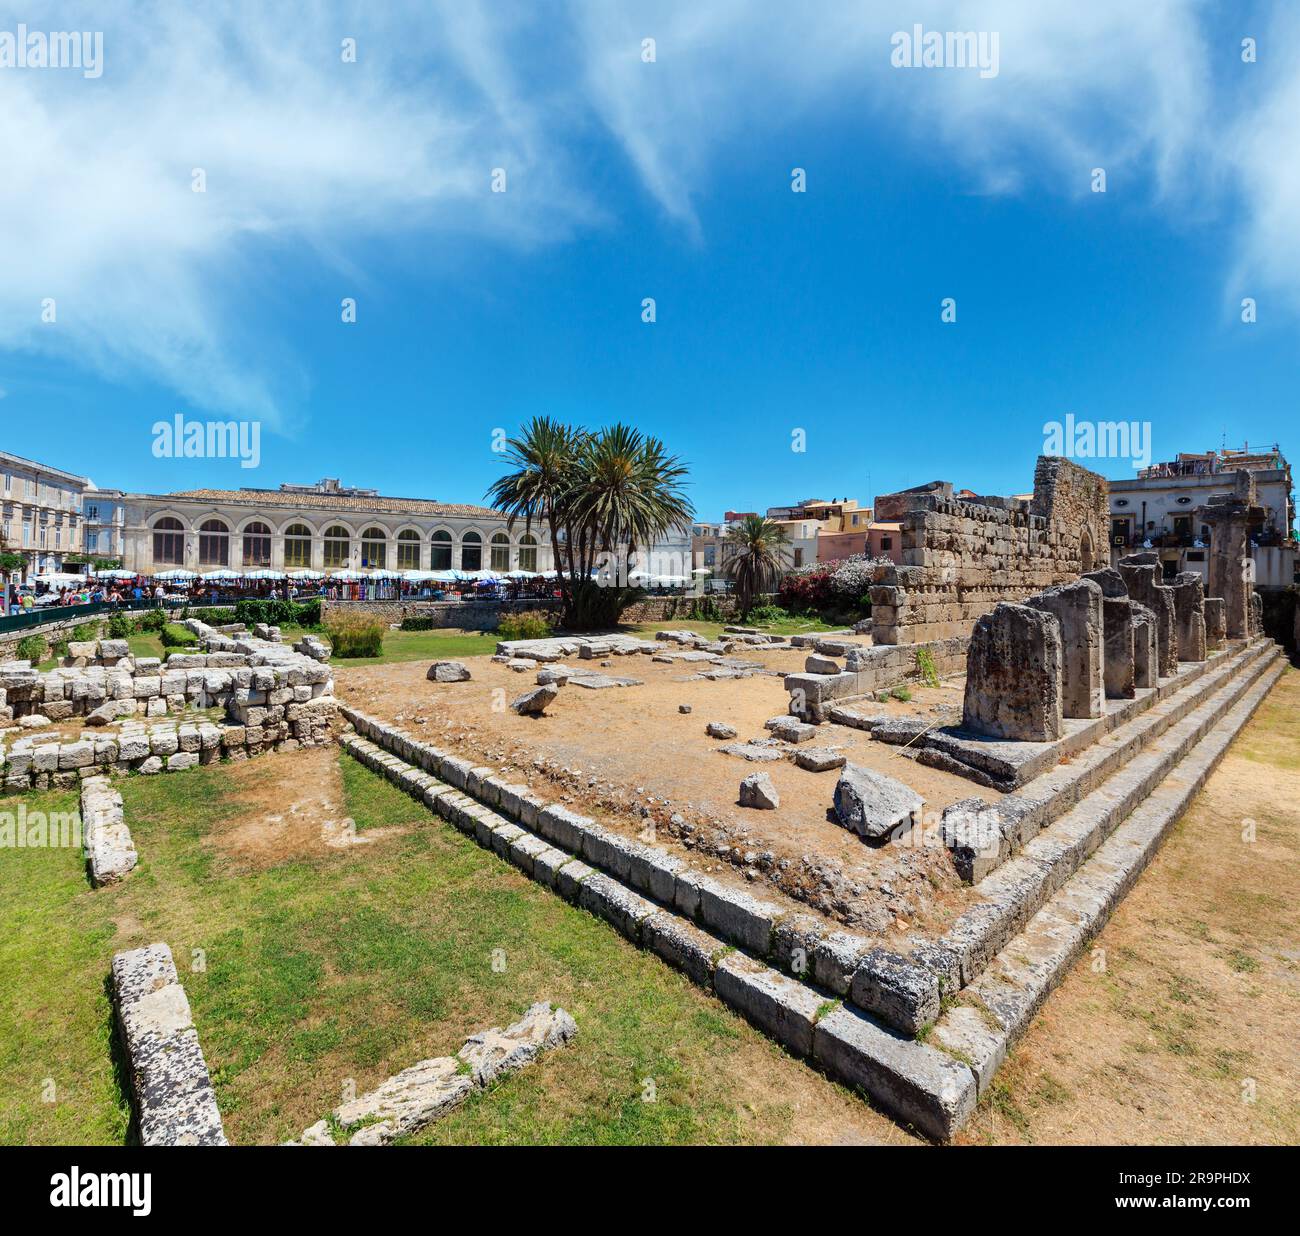 Die Ruinen der Tempel des Apollo (antike griechische Denkmäler auf der Insel Ortygia bei der Stadt Syrakus, Sizilien, Italien). Schöne Reise Foto von Sizilien. Menschen unr Stockfoto